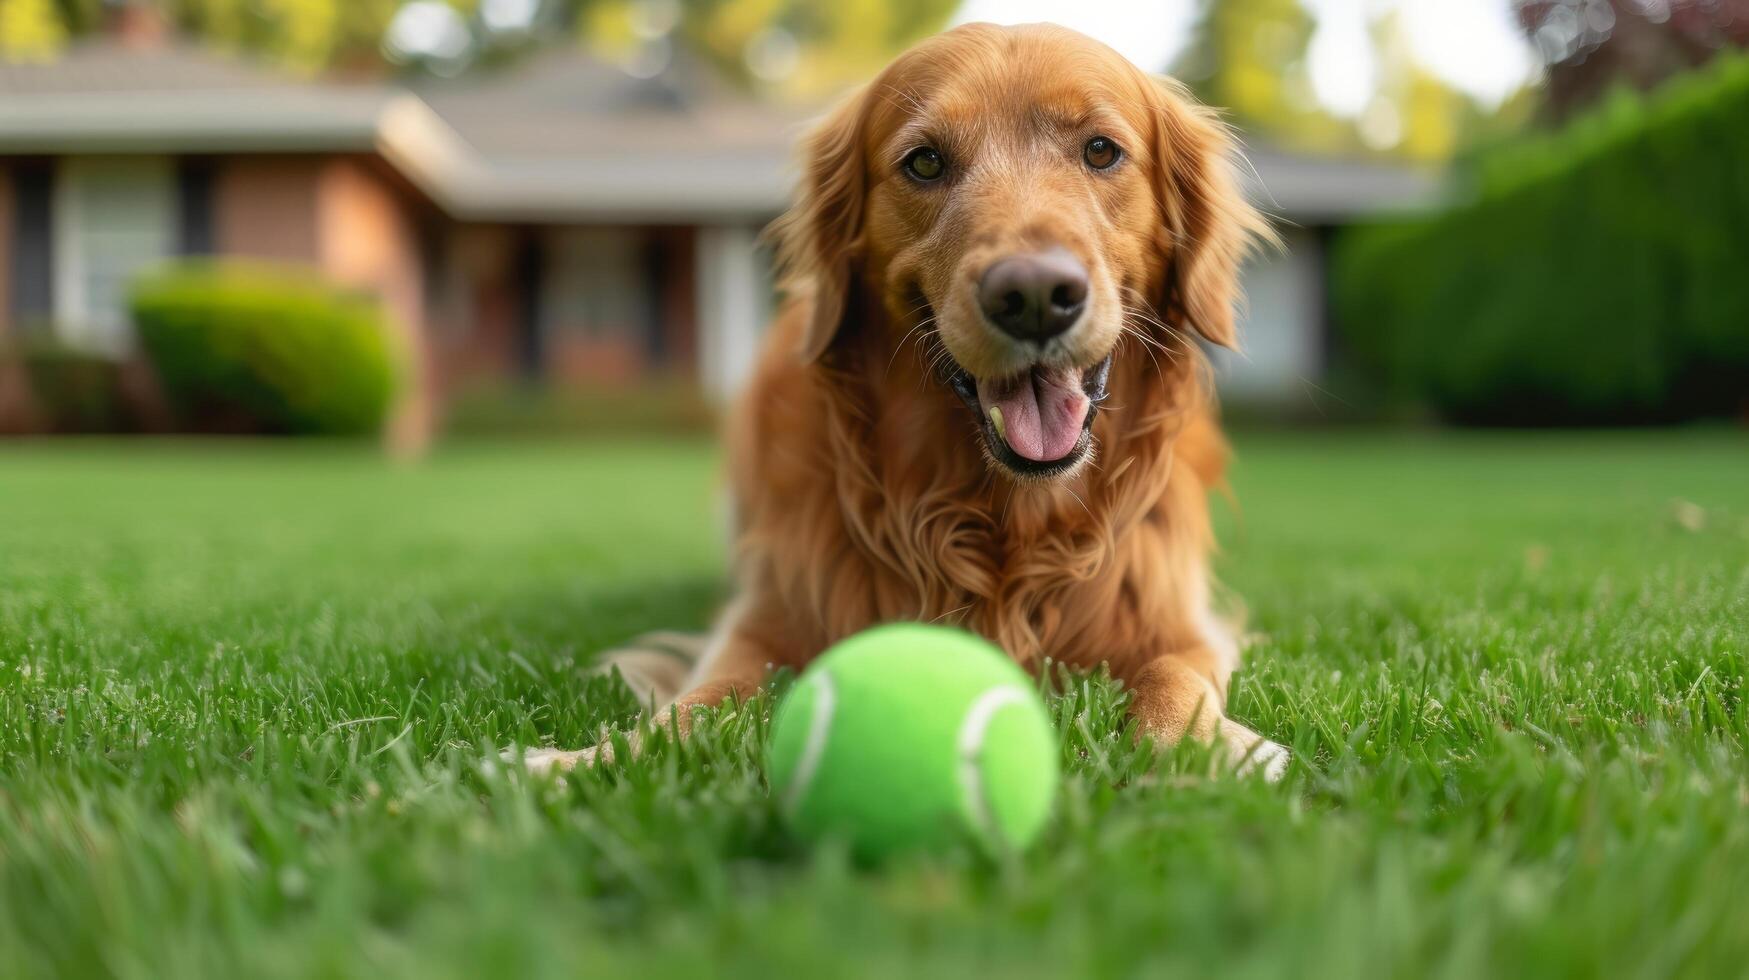 ai genererad en gyllene retriever hund spelar med en grön tennis boll på de gräsmatta nära en standard amerikan hus foto